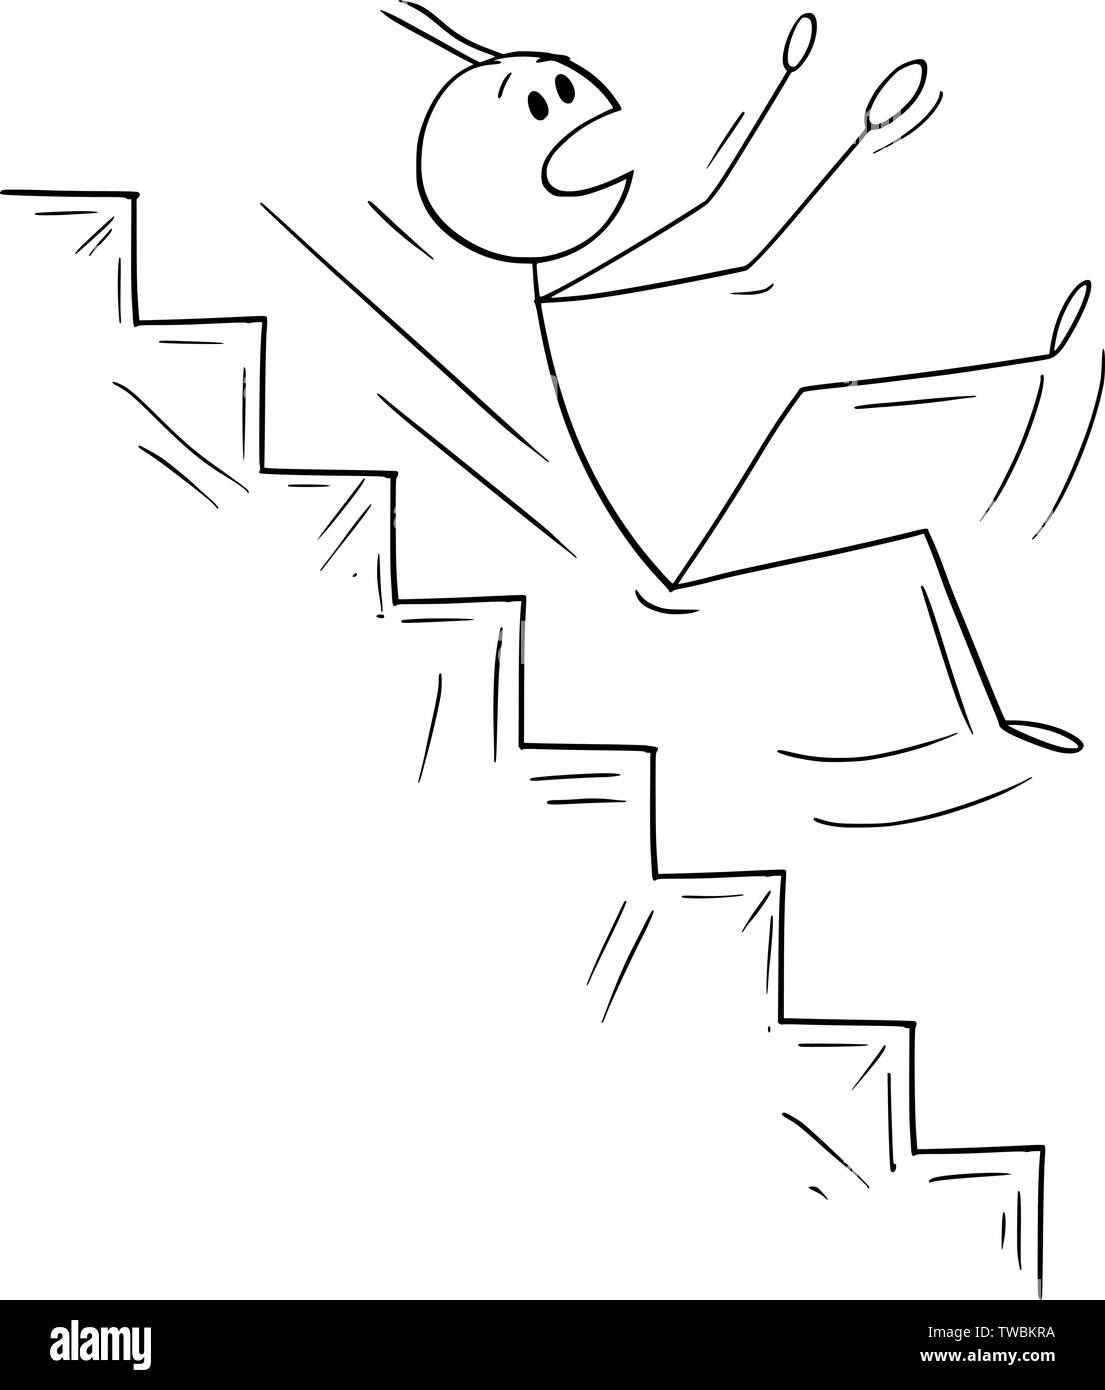 Vektor cartoon Strichmännchen Zeichnen konzeptionelle Darstellung der Mann oder Geschäftsmann, der auf gefährlichen Treppe. Business Konzept der Krise und Insolvenz. Stock Vektor